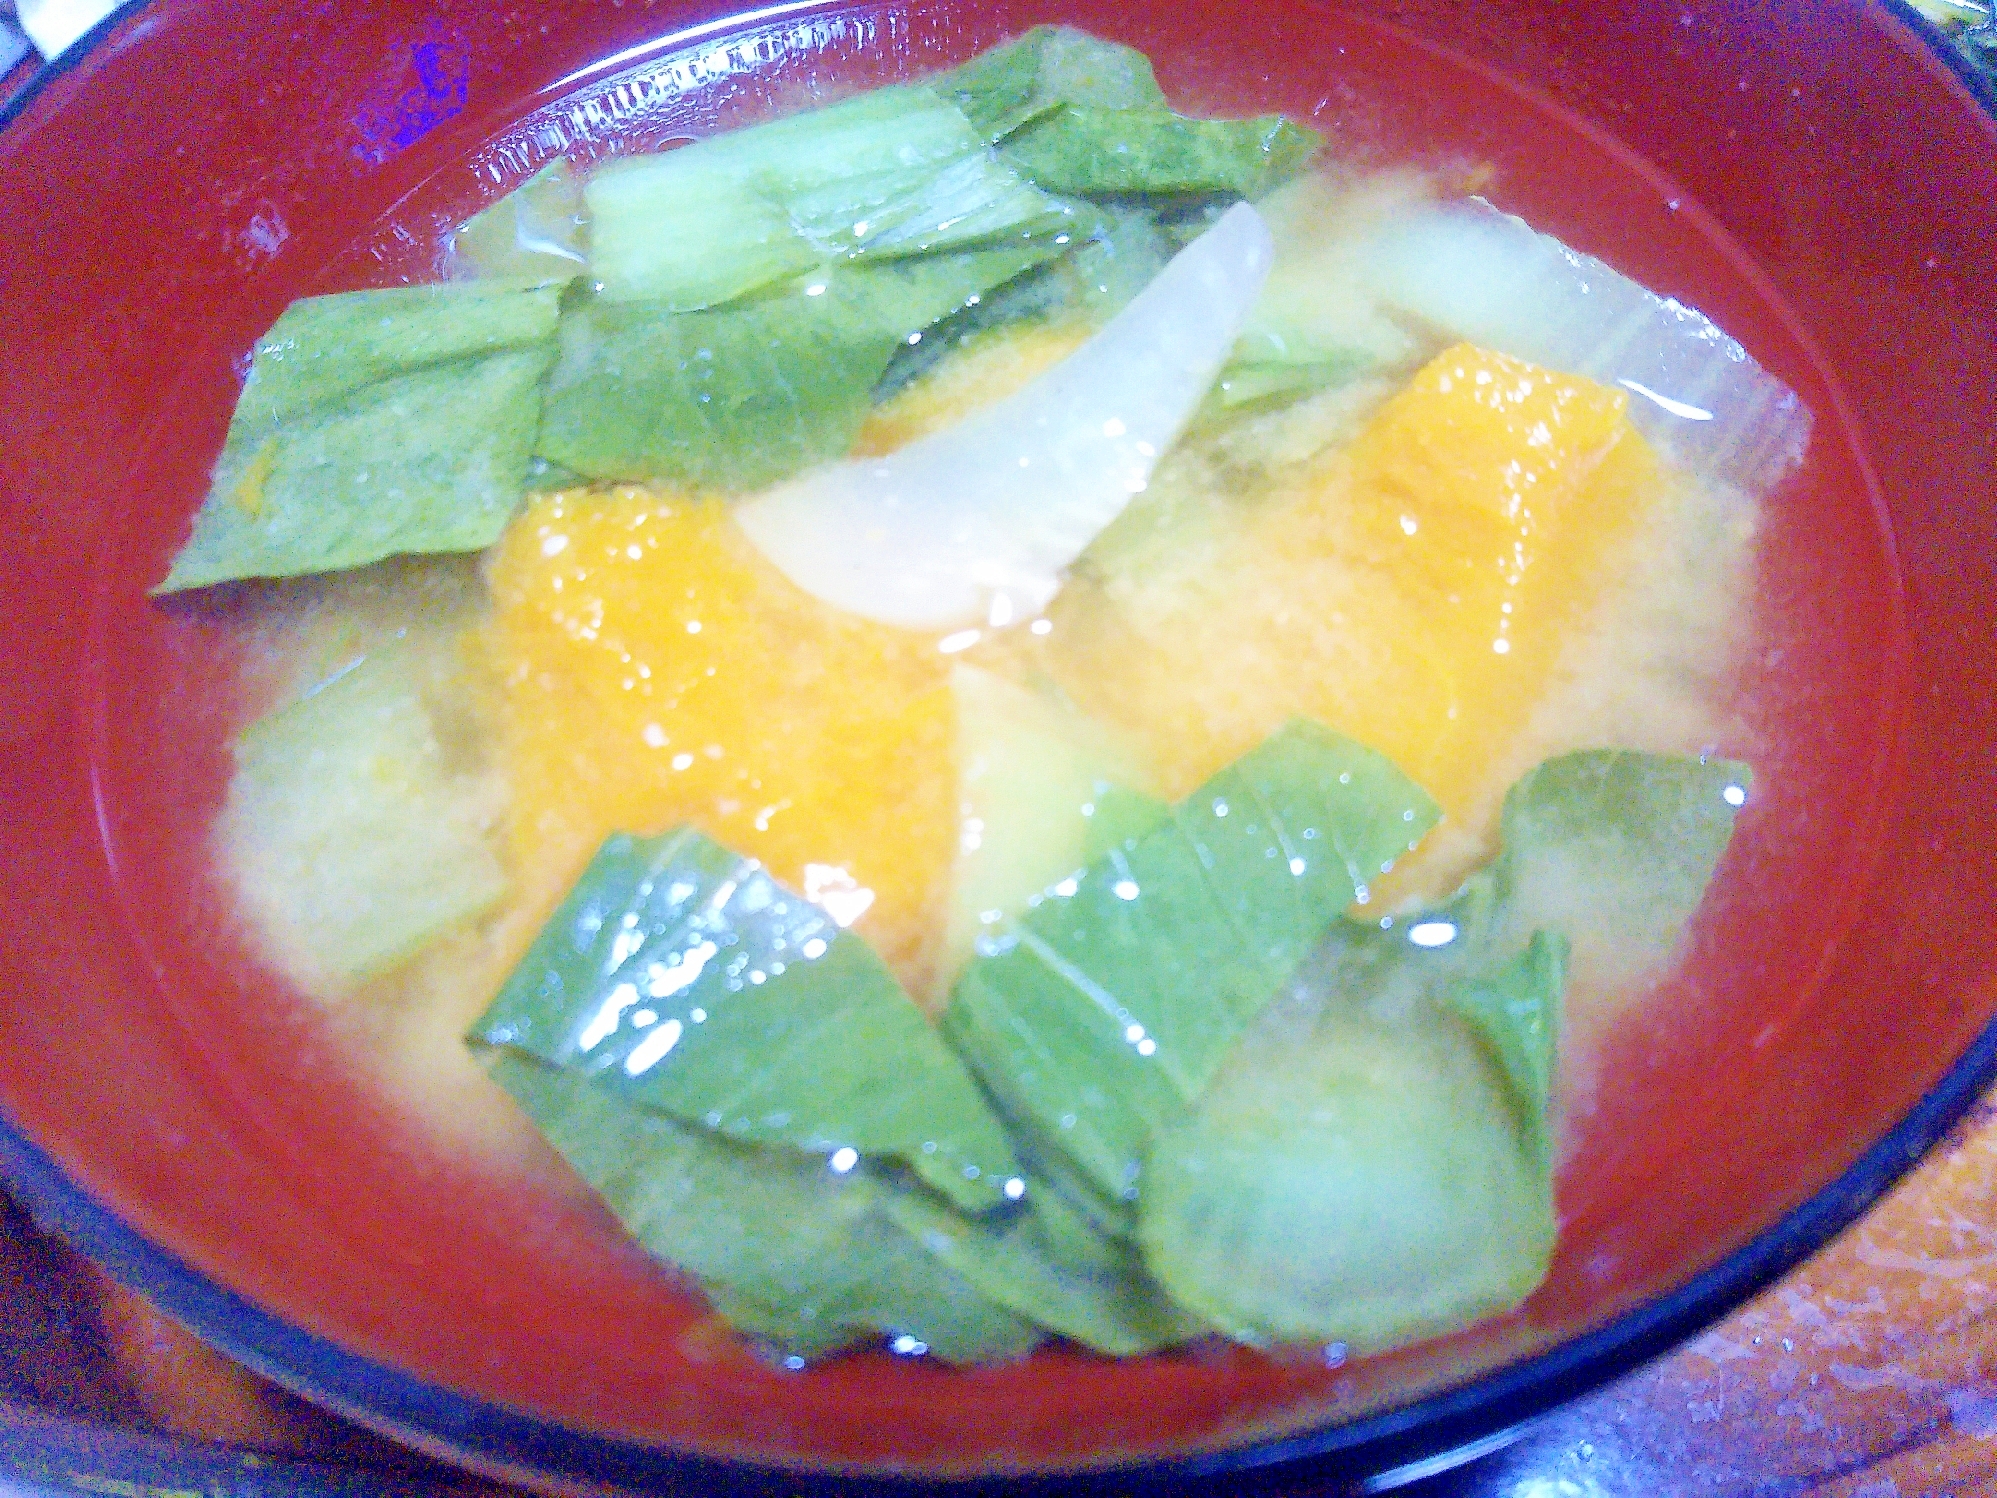 青梗菜&南瓜の味噌汁